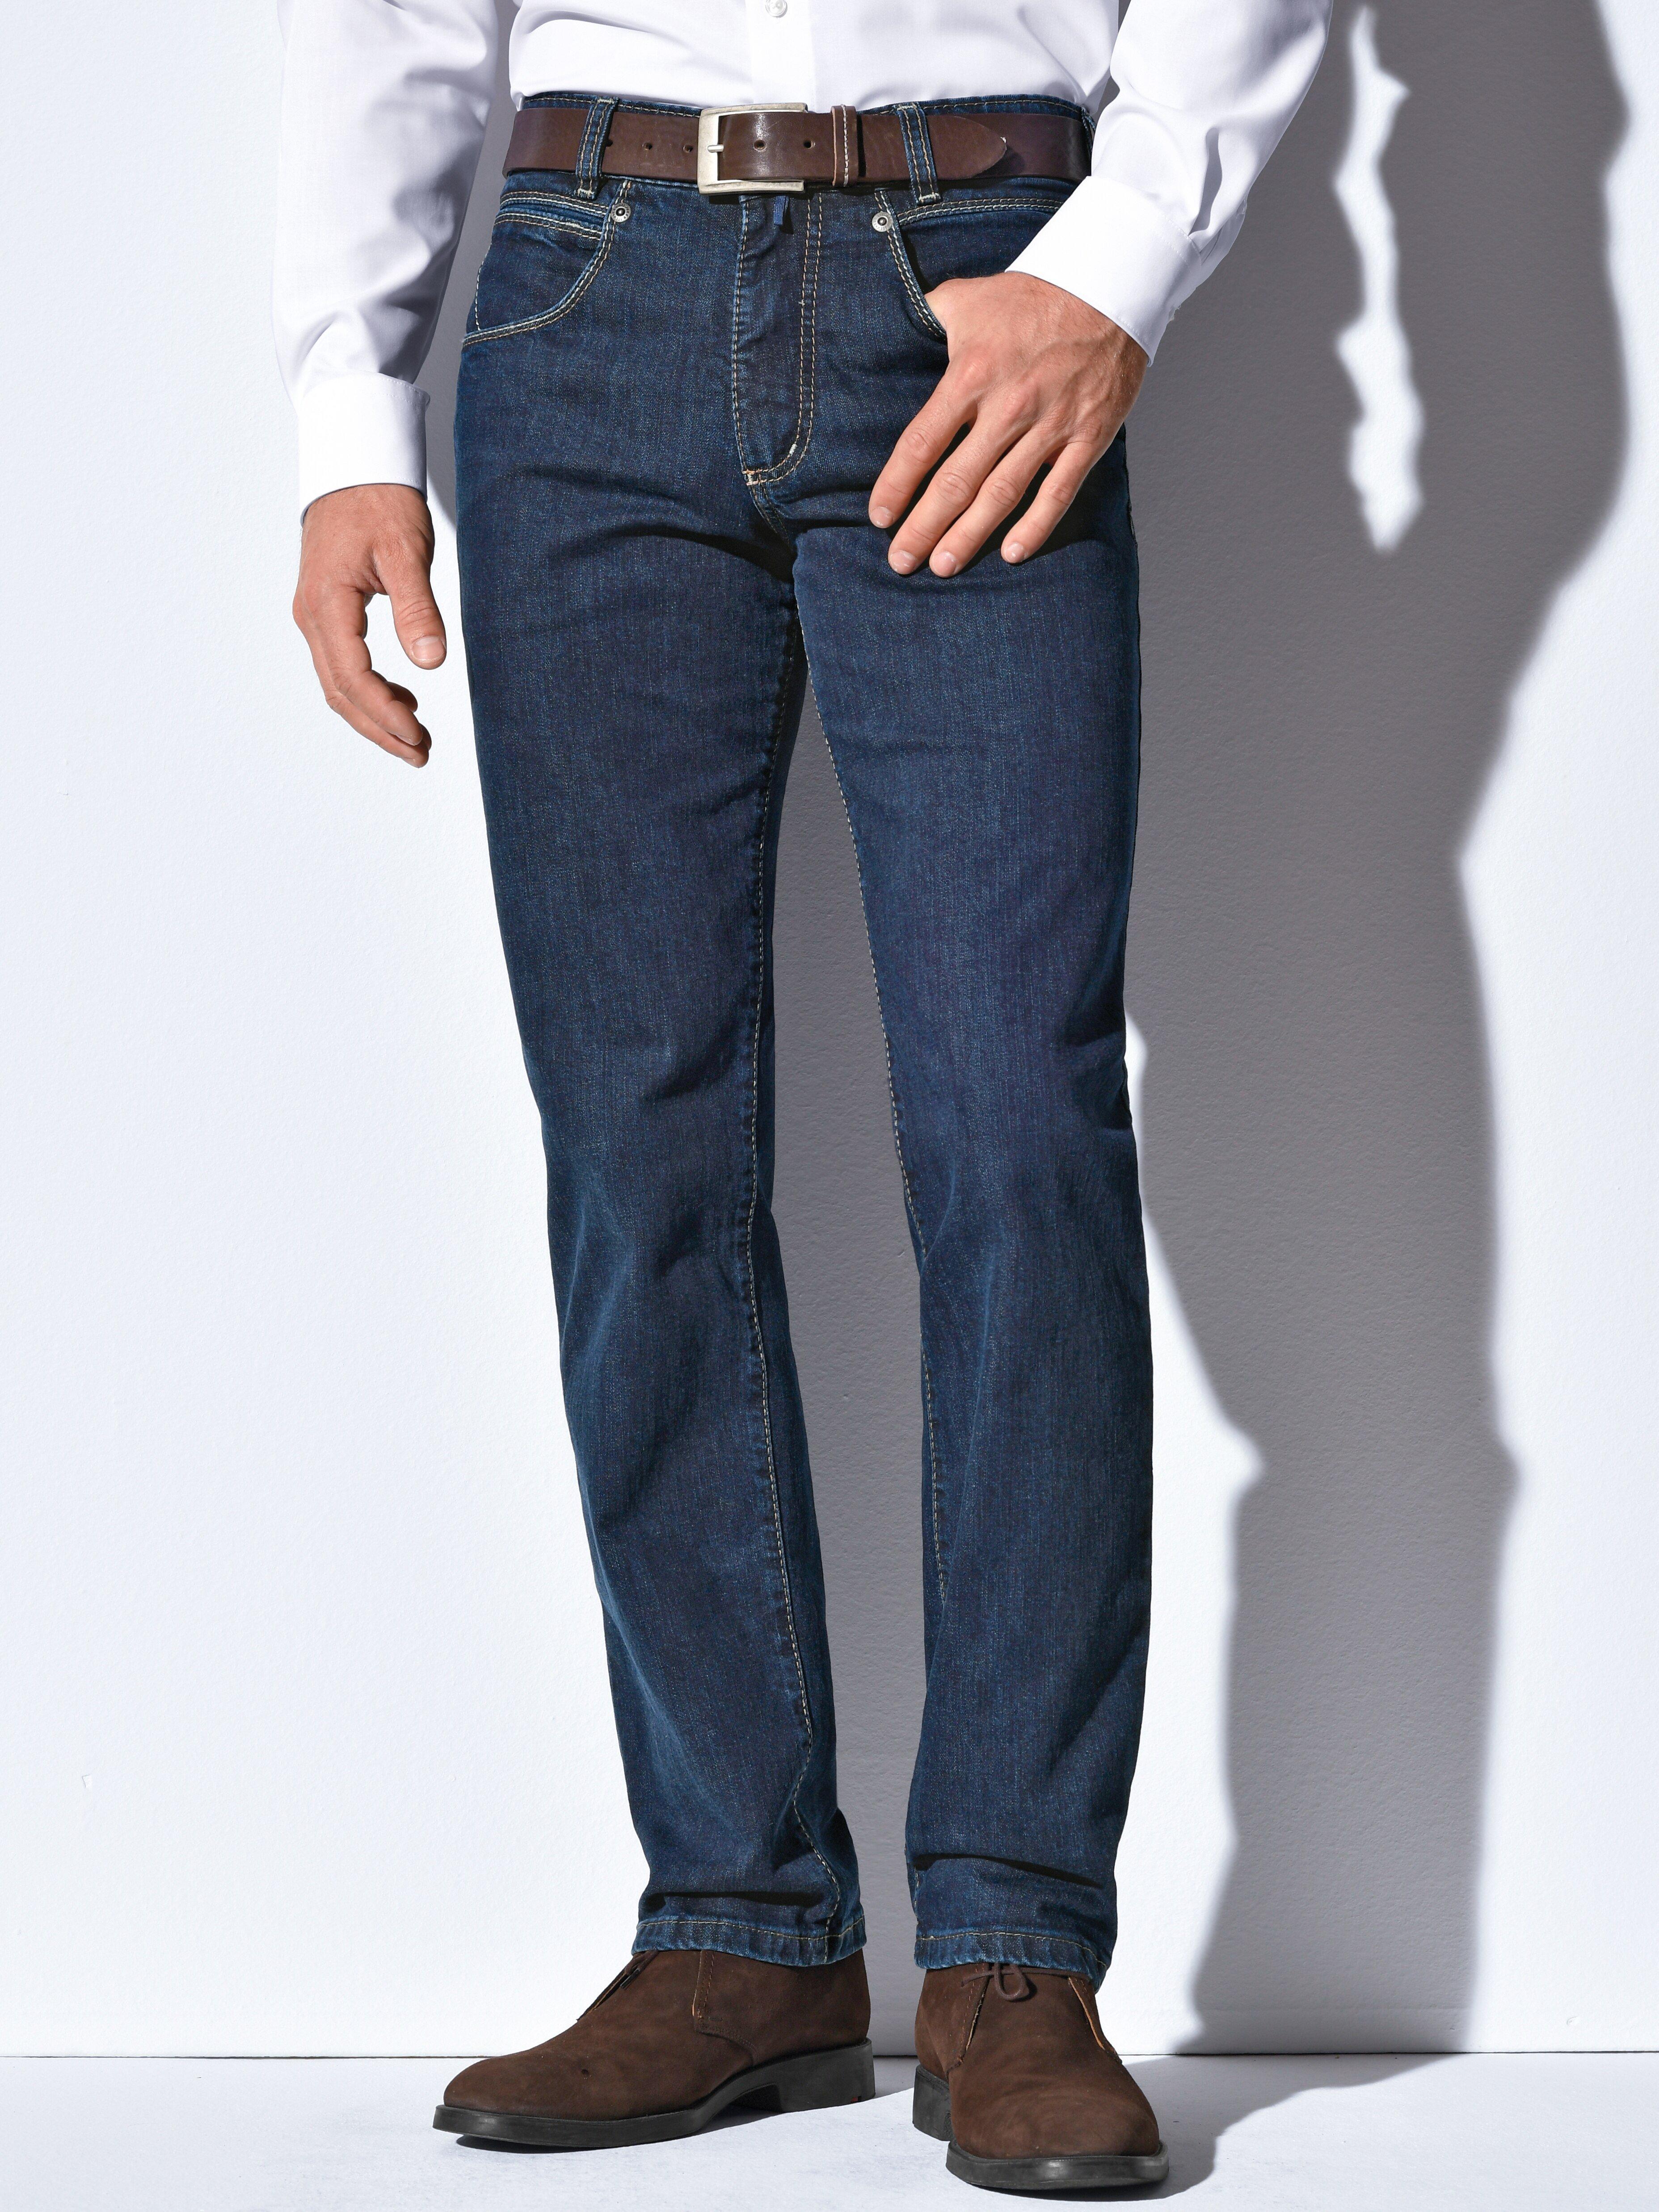 JOKER - Jeans 30 inch - Model FREDDY